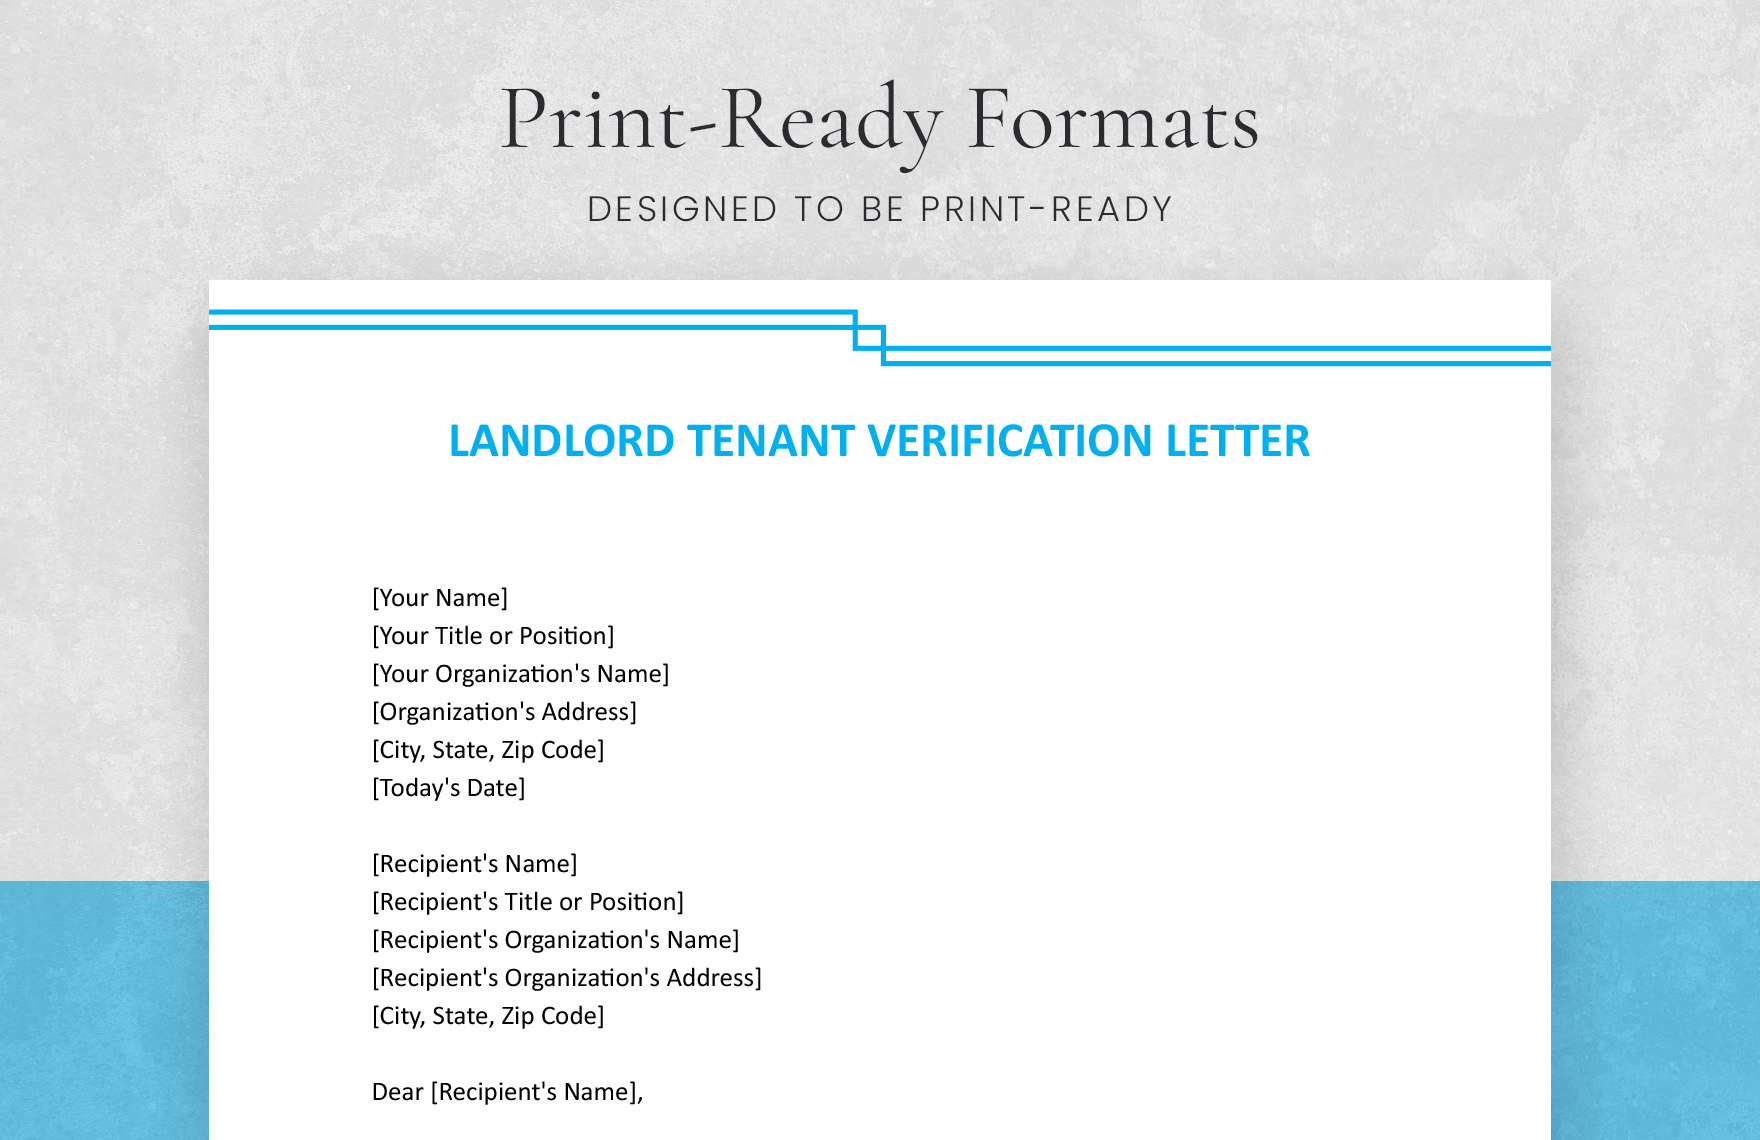 Landlord Tenant Verification Letter